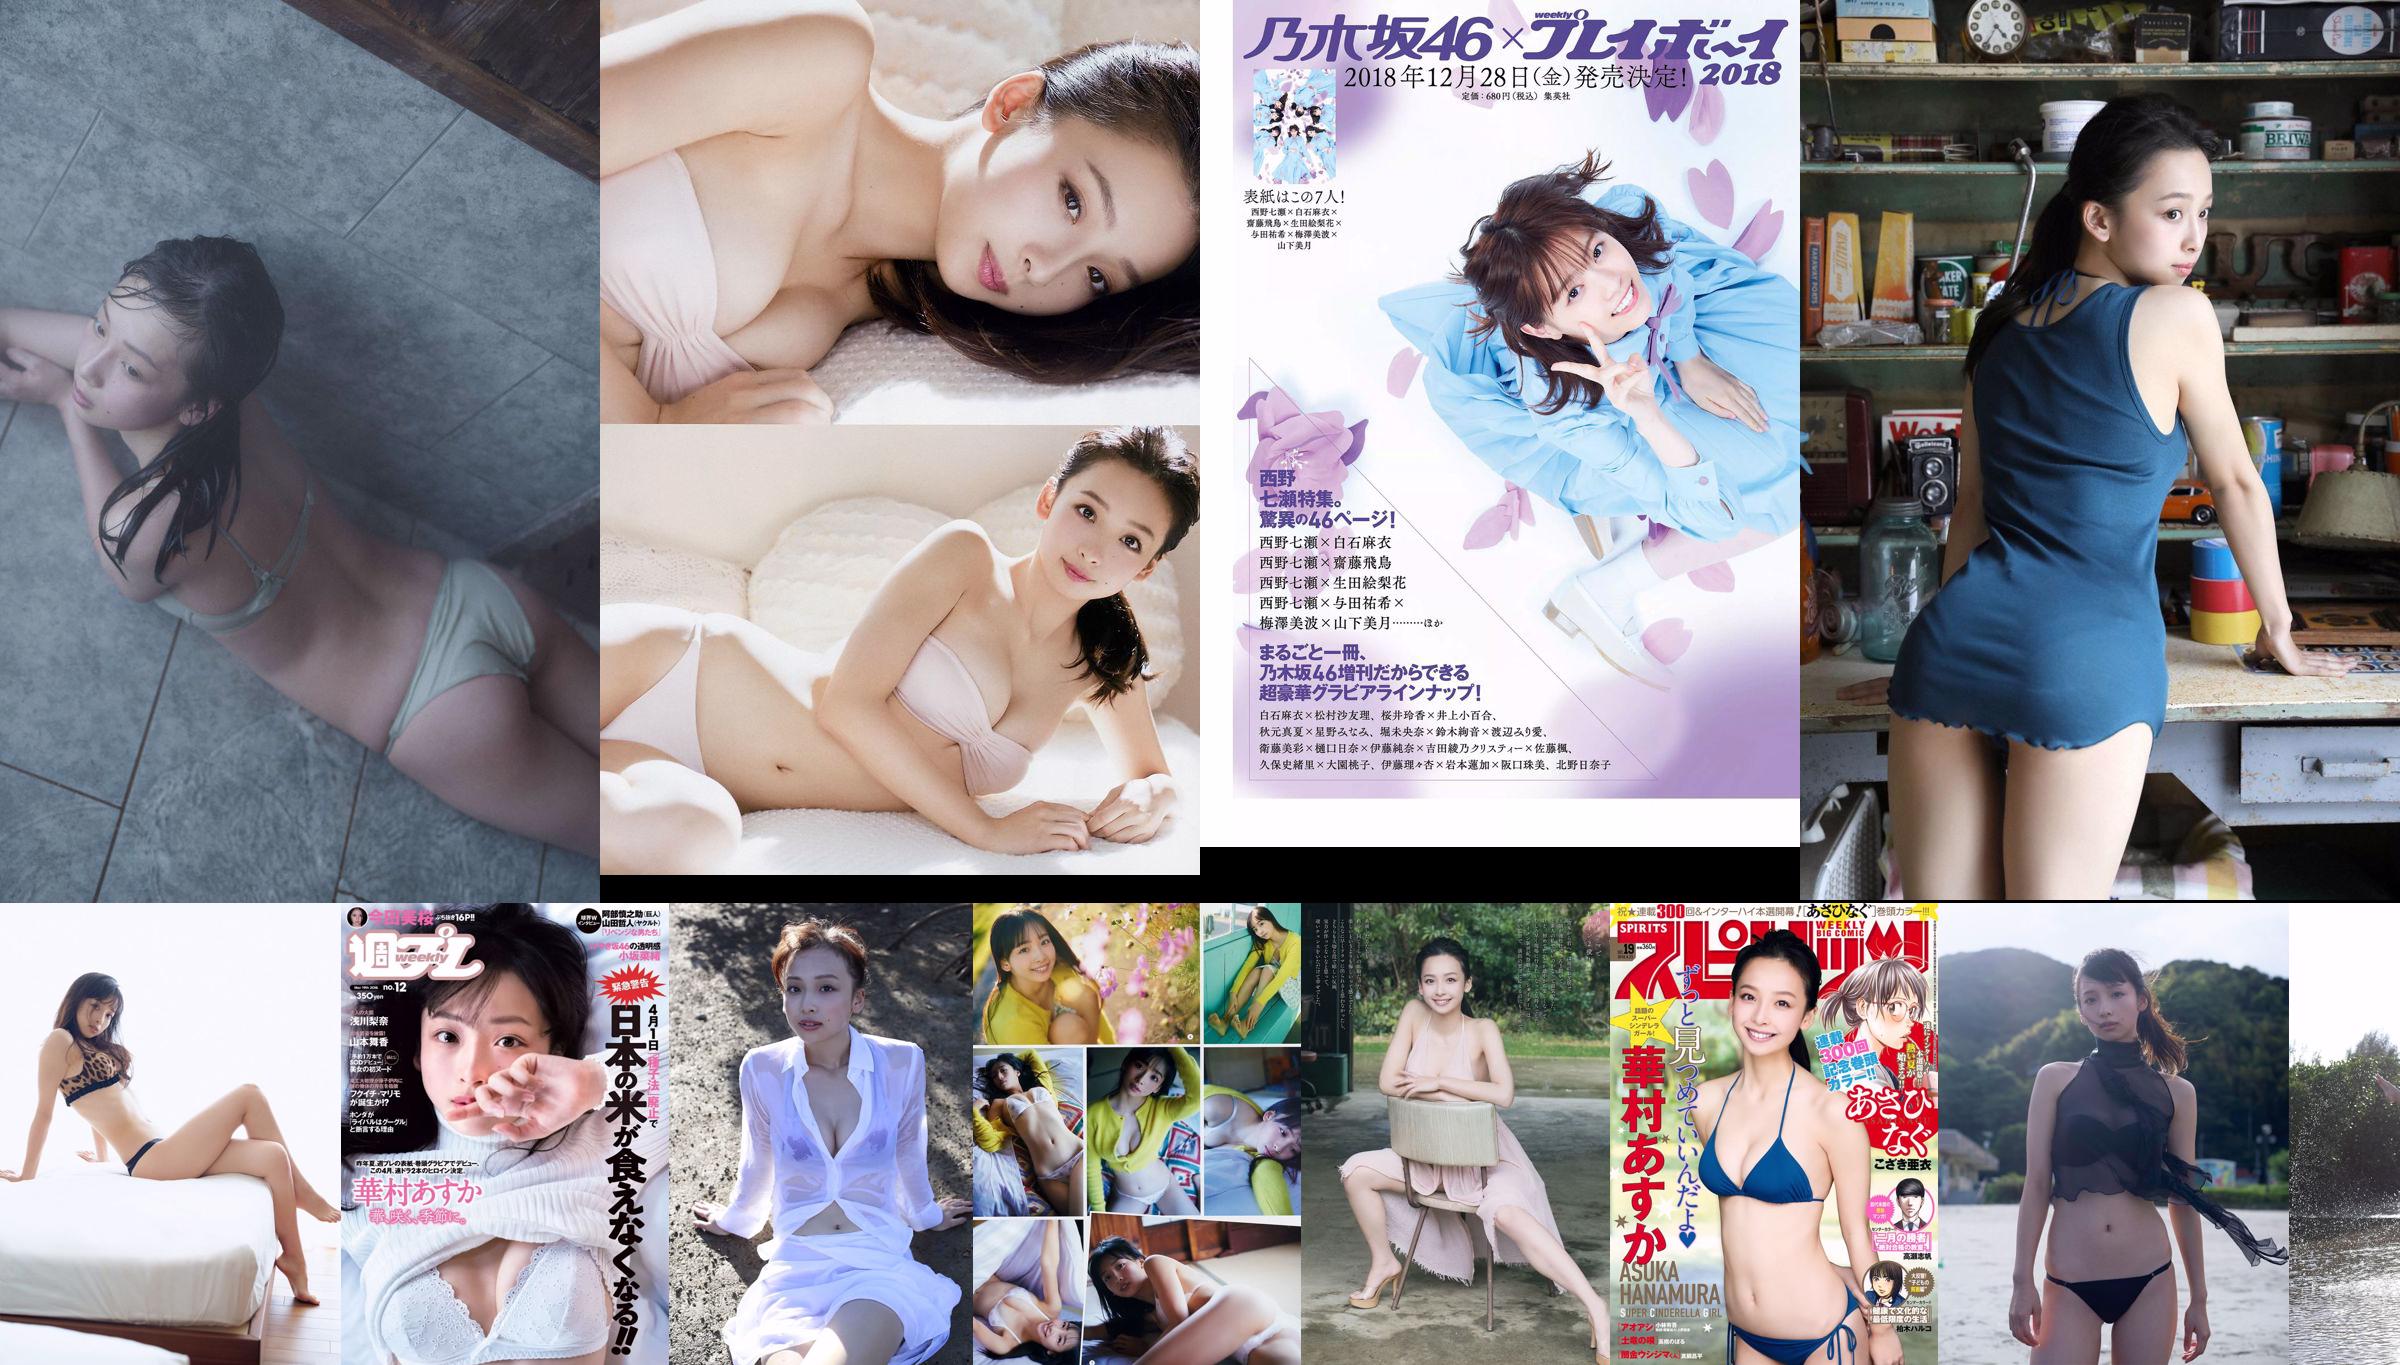 [Young Gangan] Asuka Hanamura Miyu Kitamuki 2019 No.01 Photo Magazine No.473e19 Página 2